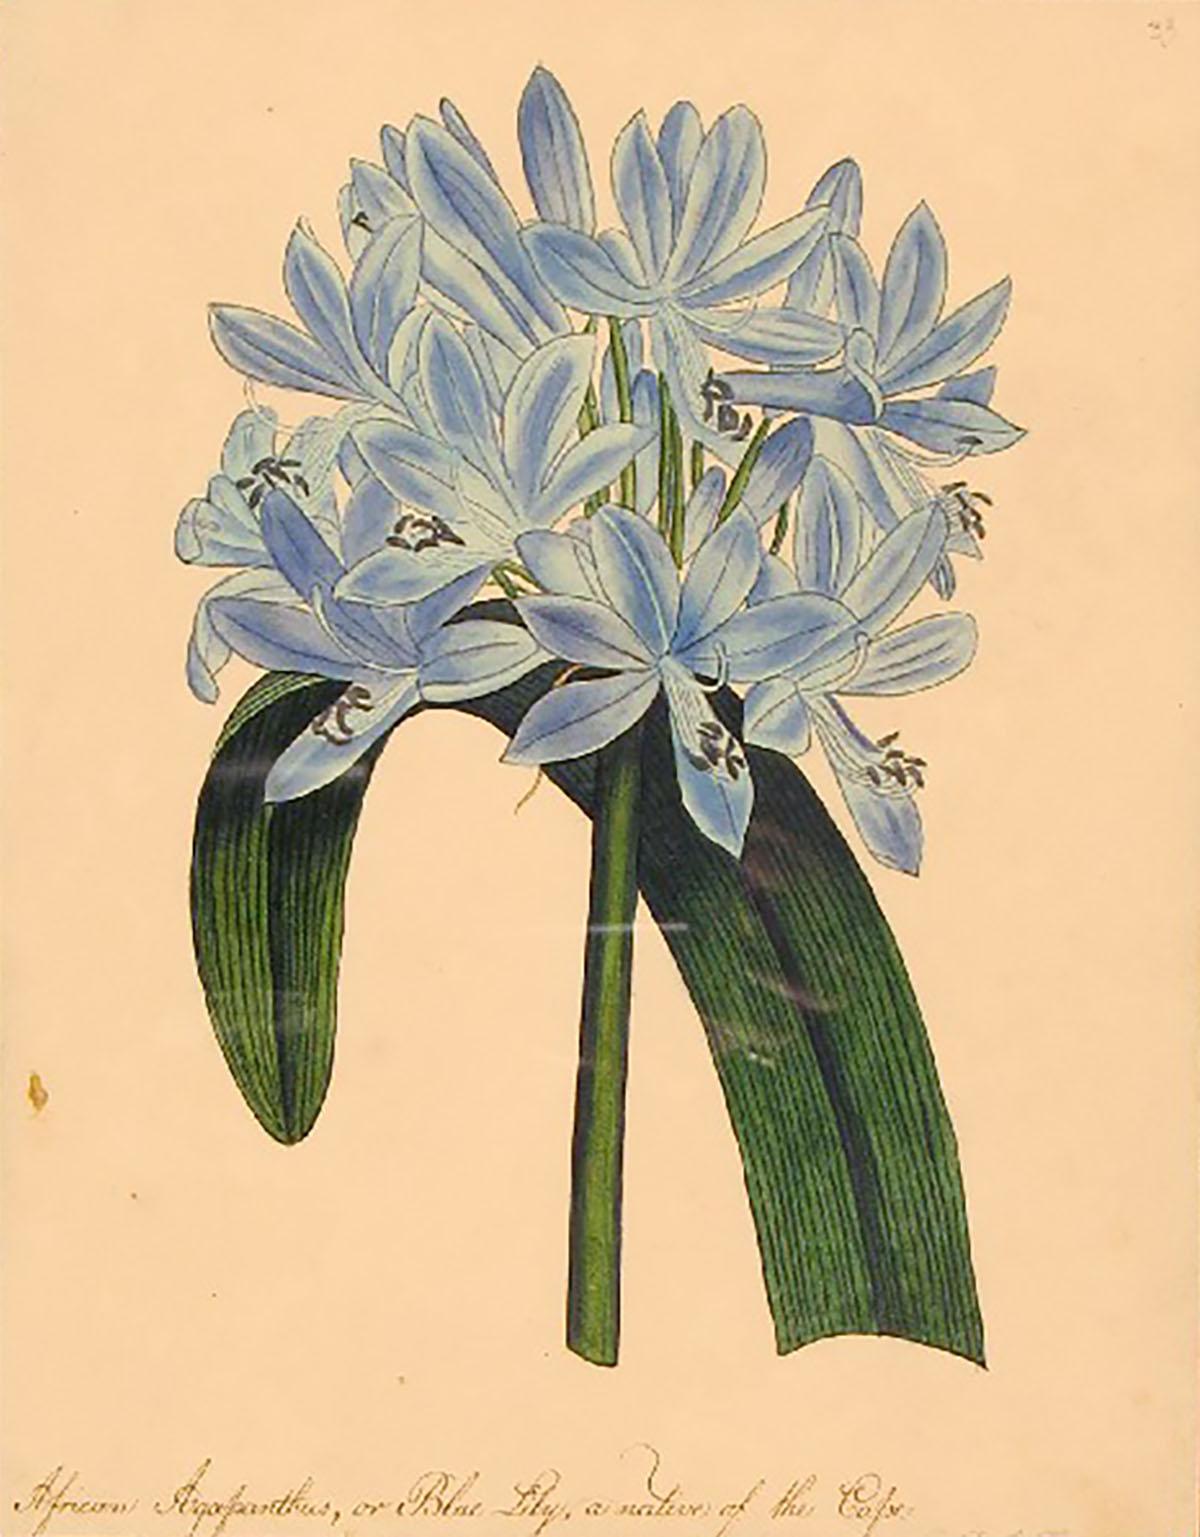 Afrikanische afrikanische Agapanthus oder blaue Lilie, die aus dem Kap stammt